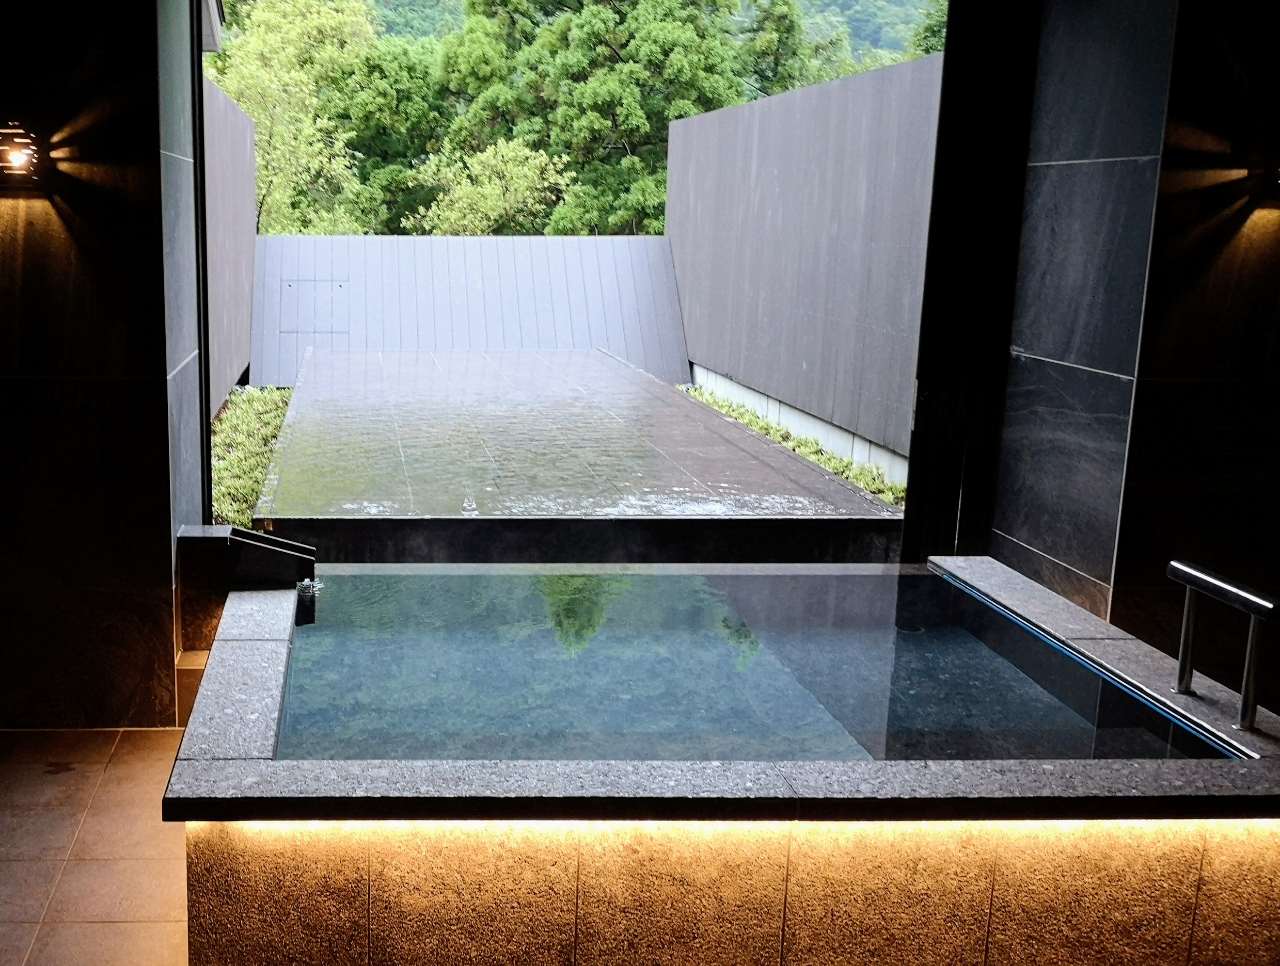 神奈川県足柄下郡・ホテル「はつはな」貸切温泉風呂「水面の湯」